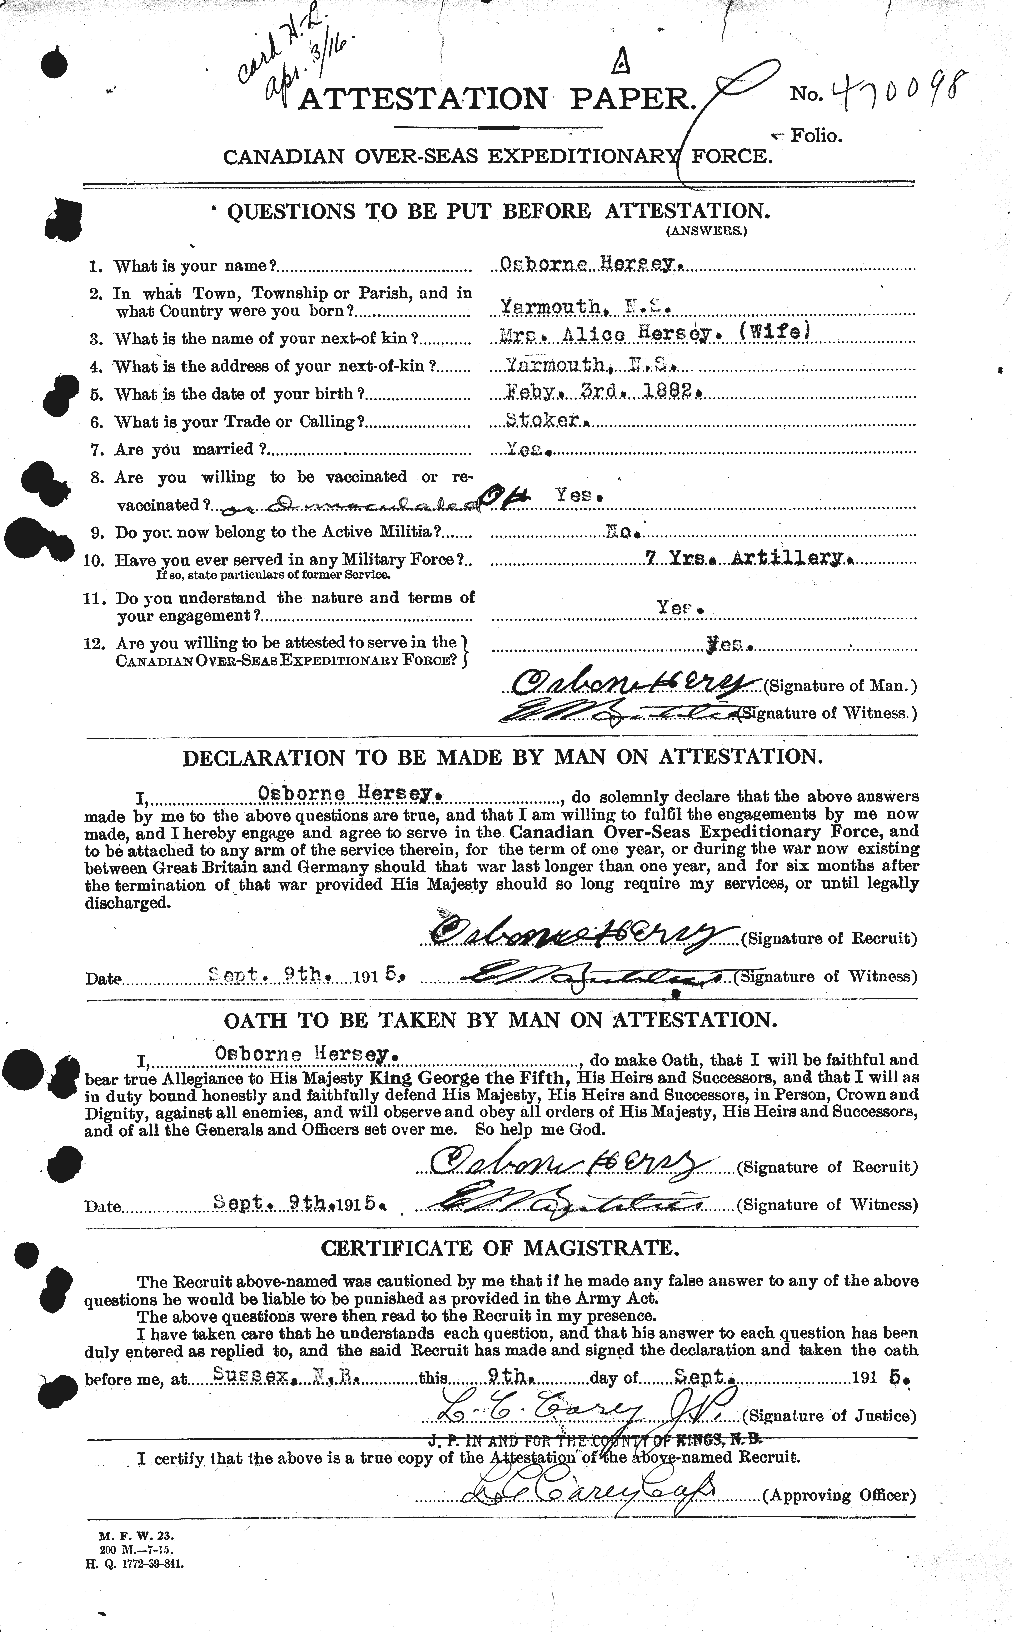 Dossiers du Personnel de la Première Guerre mondiale - CEC 390421a